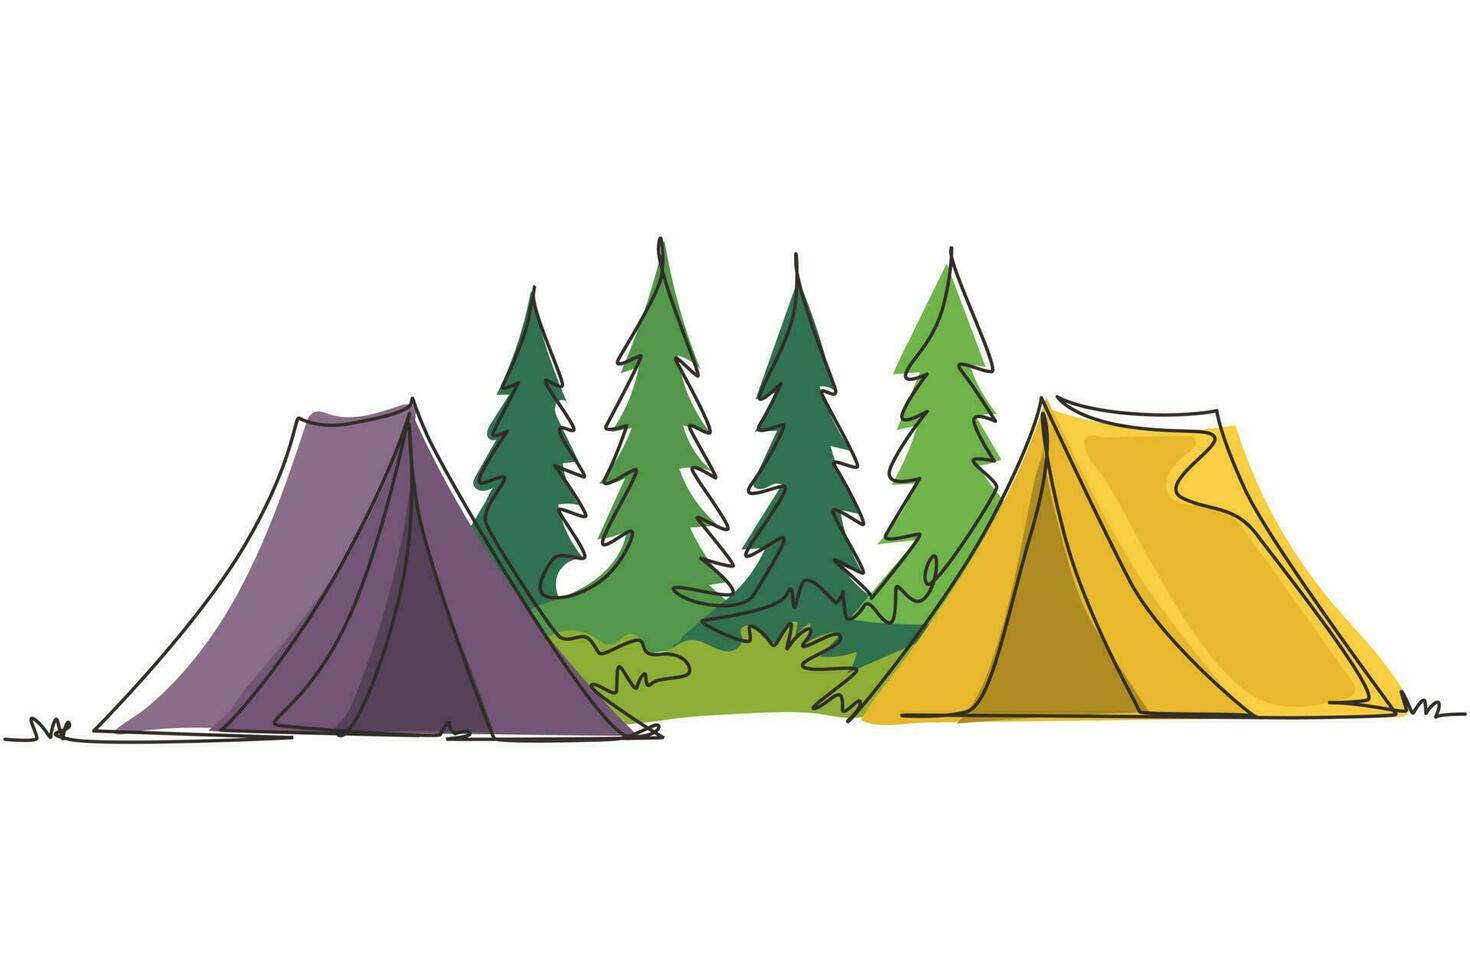 dibujo continuo de una línea dos tiendas de campaña camping turista bosque de pinos montaña expedición. concepto de viaje, aventura, naturaleza, expedición y vacaciones. ilustración gráfica de vector de diseño de dibujo de una sola línea